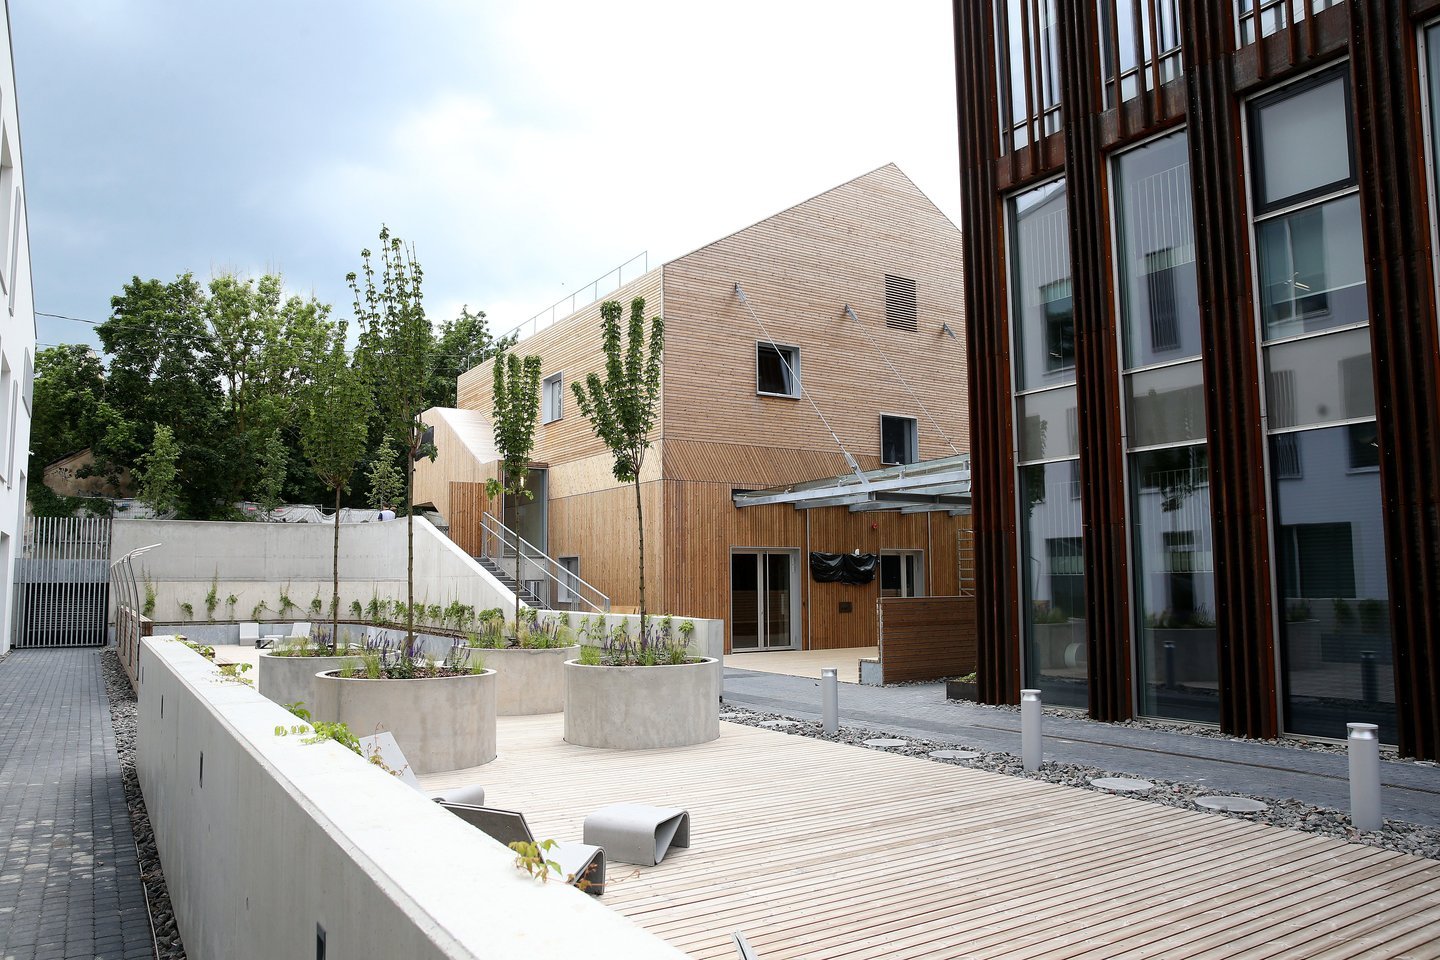 Vilniaus senamiestyje, 7 hektarų teritorijoje, kuriamas „Paupys“ – vienas didžiausių Lietuvoje nebefunkcionalių erdvių konversijos projektų, įtrauktų į 2010–2020 metų Vilniaus miesto savivaldybės strateginį planą „Architektūros parkas“.<br>R.Danisevičiaus nuotr.